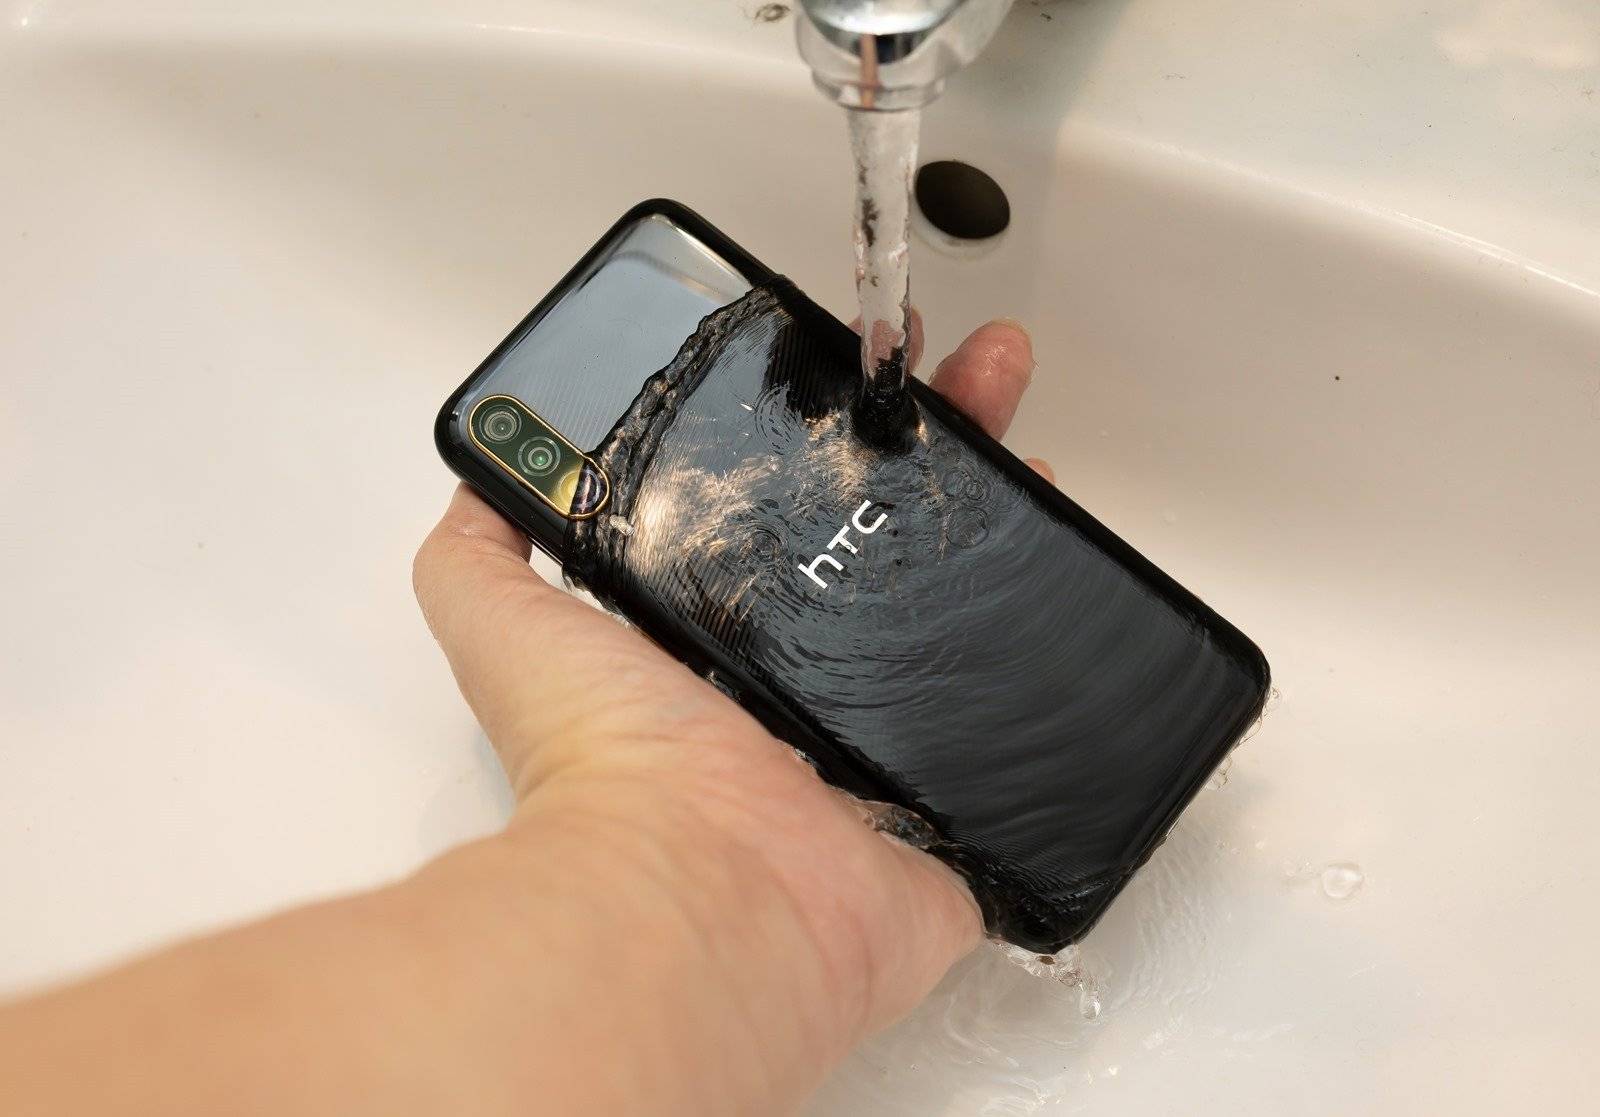 防水无线充电平价机型 HTC Desire 22 Pro 元宇宙手机开箱 / 相机实拍 / 性能电力实测 @3C 达人廖阿辉